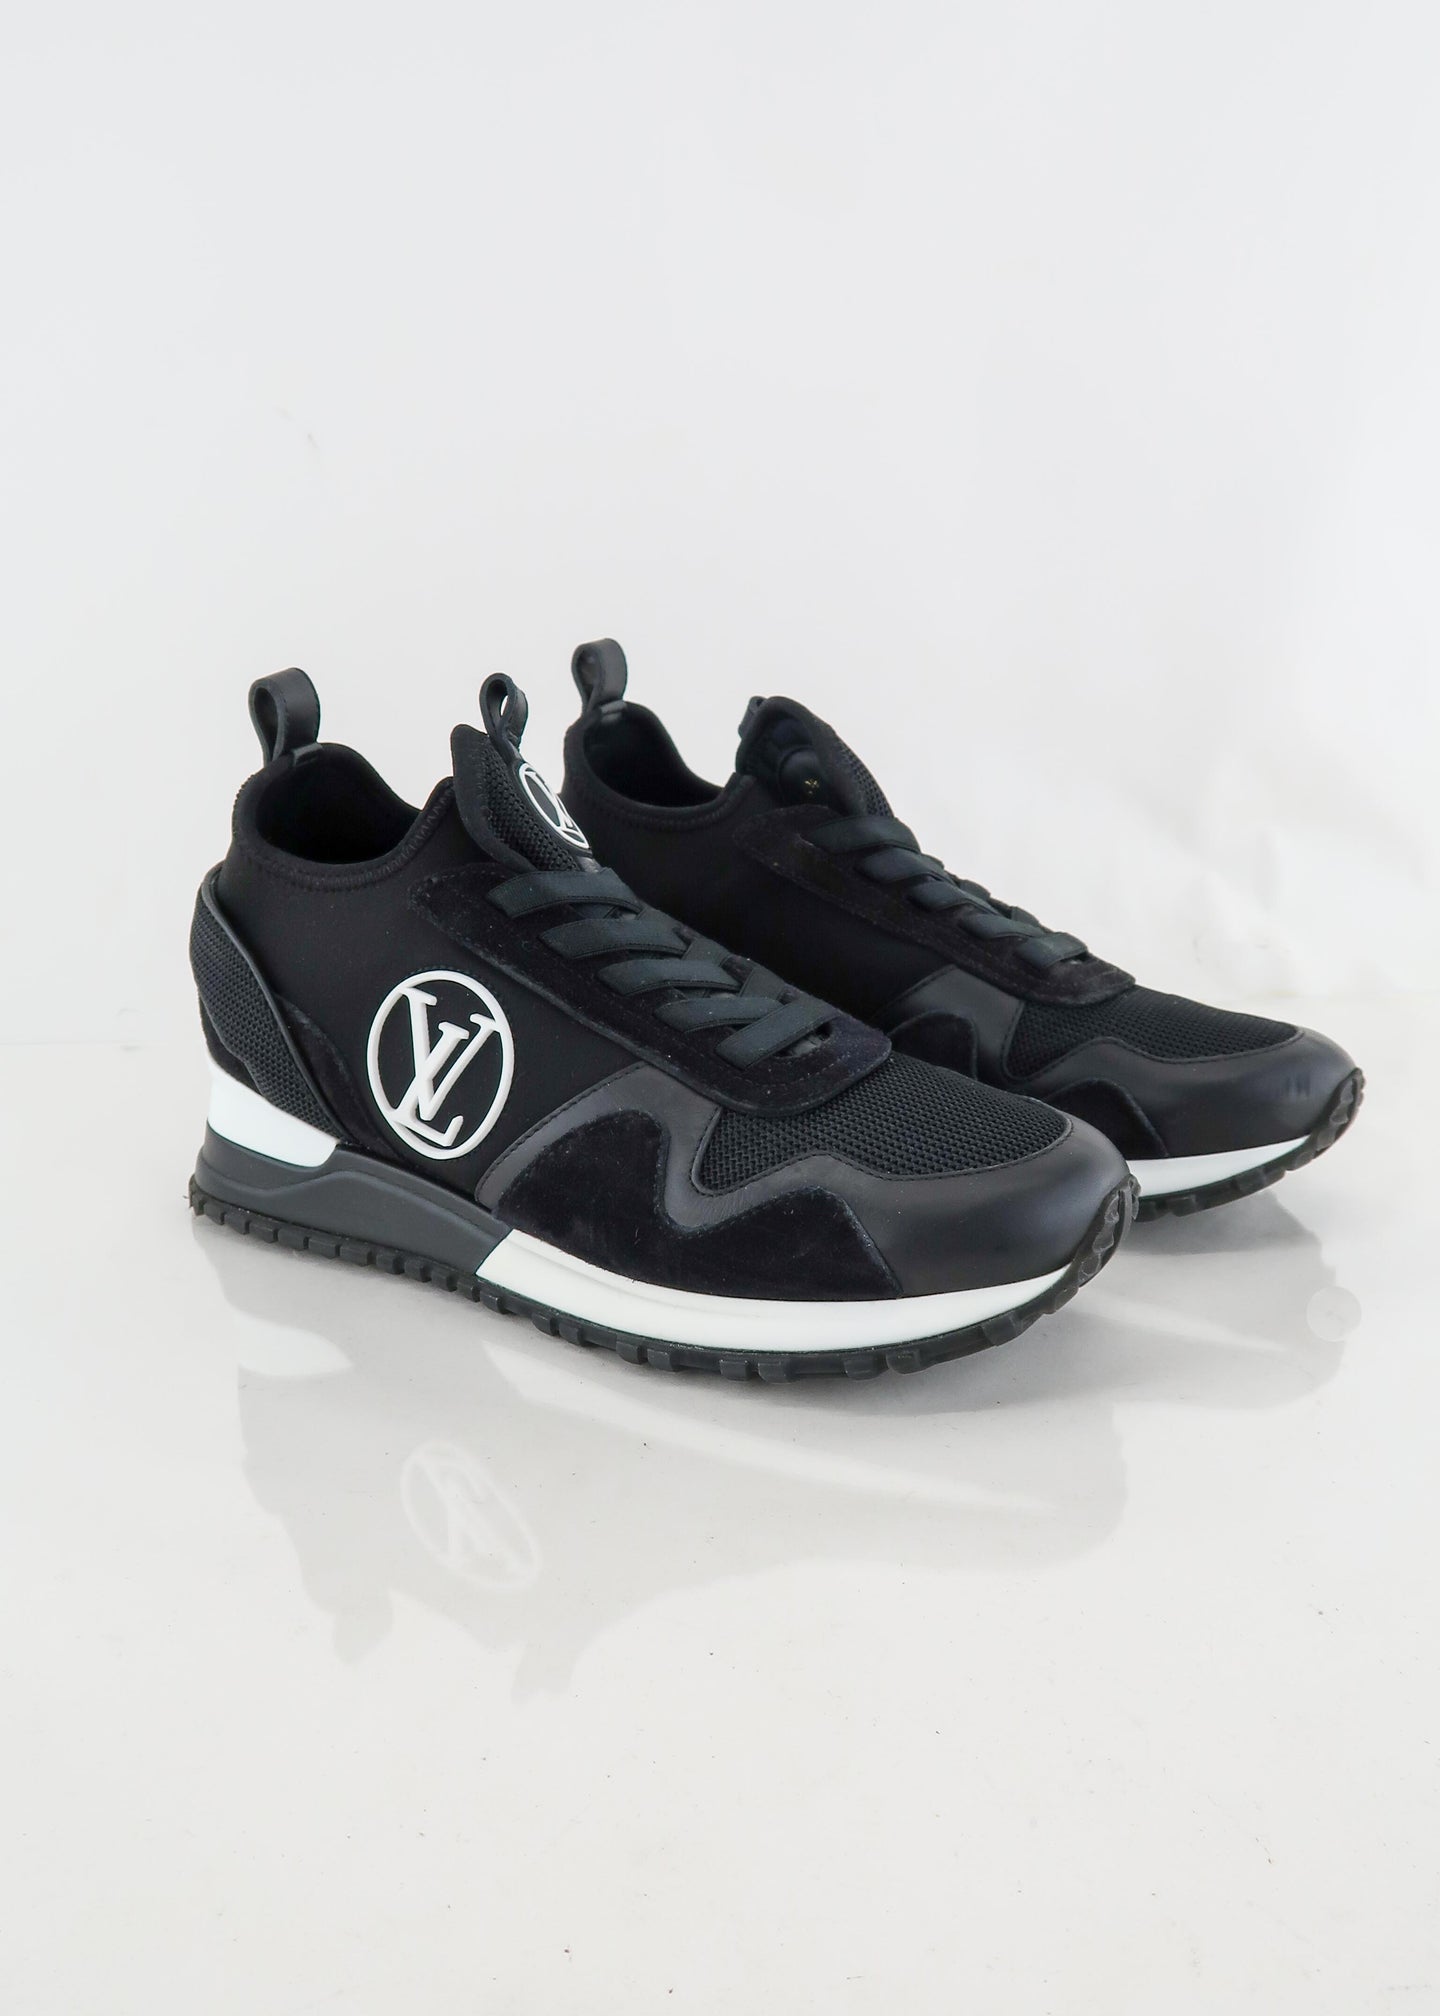 Louis Vuitton Runaway Sneakers, Trainers - Designer Exchange